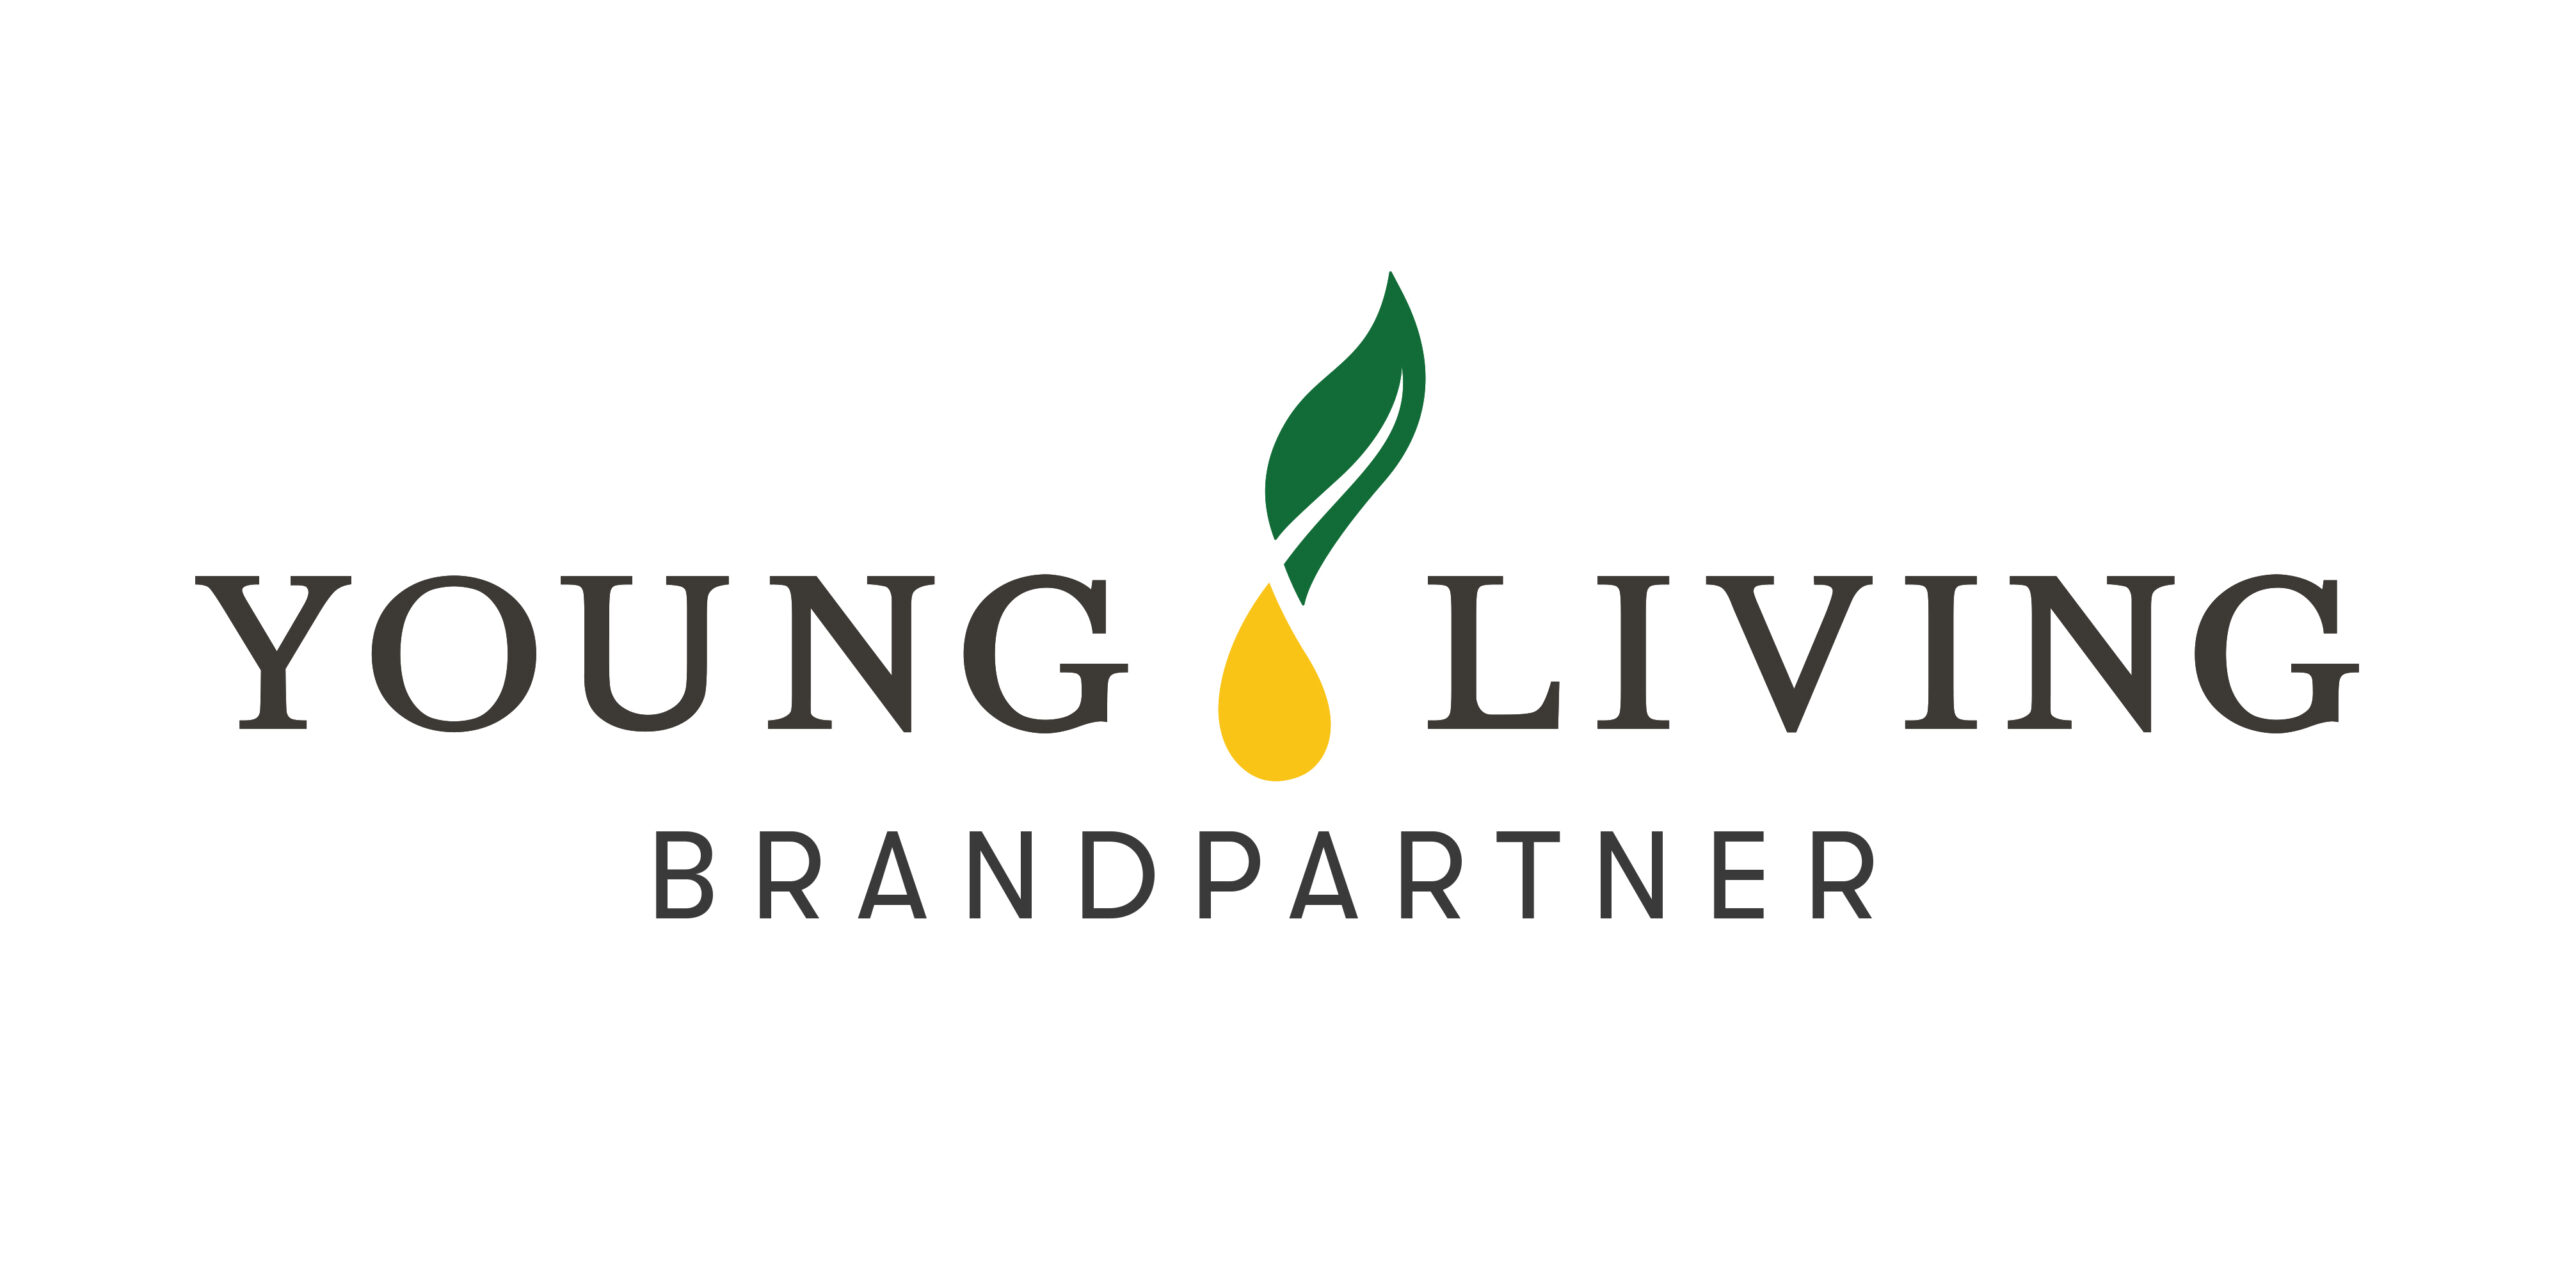 YL_brand_partner_logo